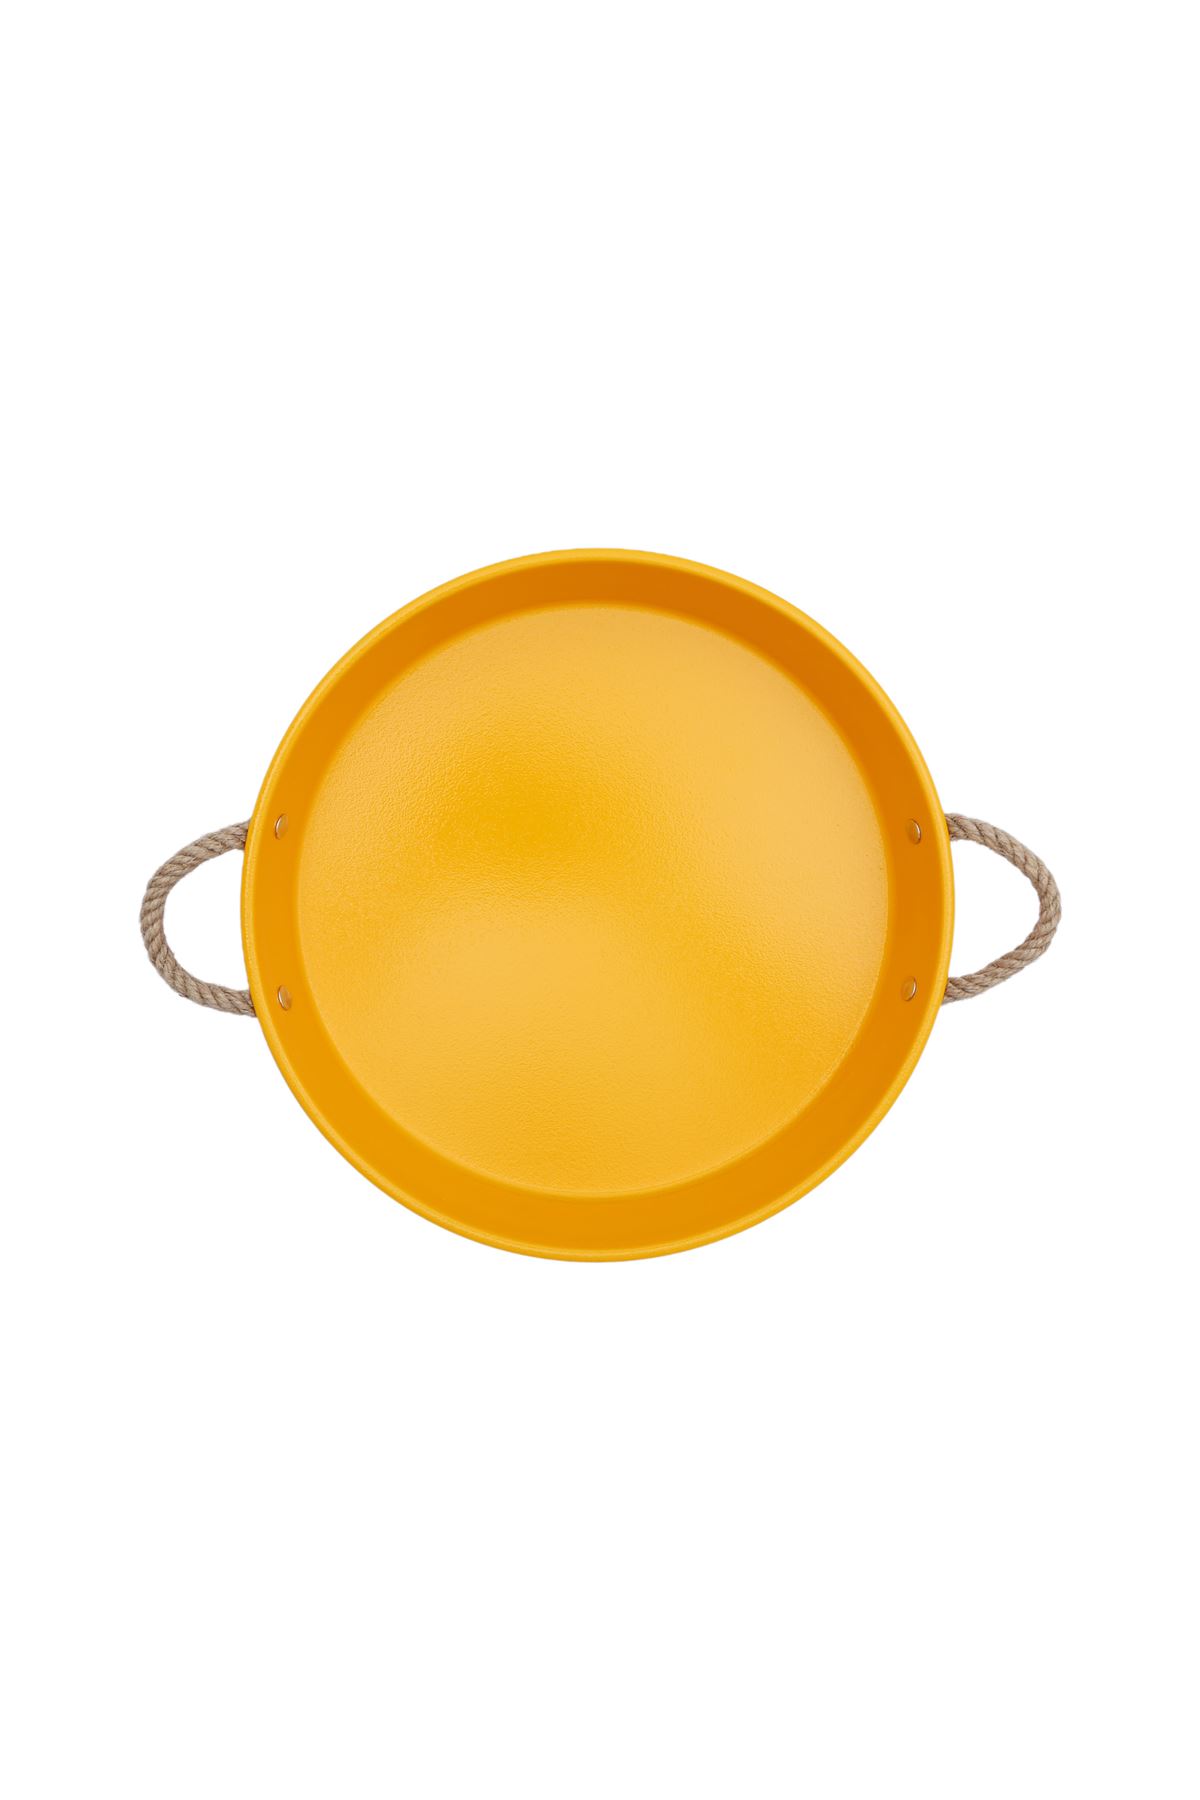 Kitchen Trend 30 Cm Halat Kulplu Sarı Metal Tepsi Çay tepsisi Kahve Tepsisi Sunum Tepsisi